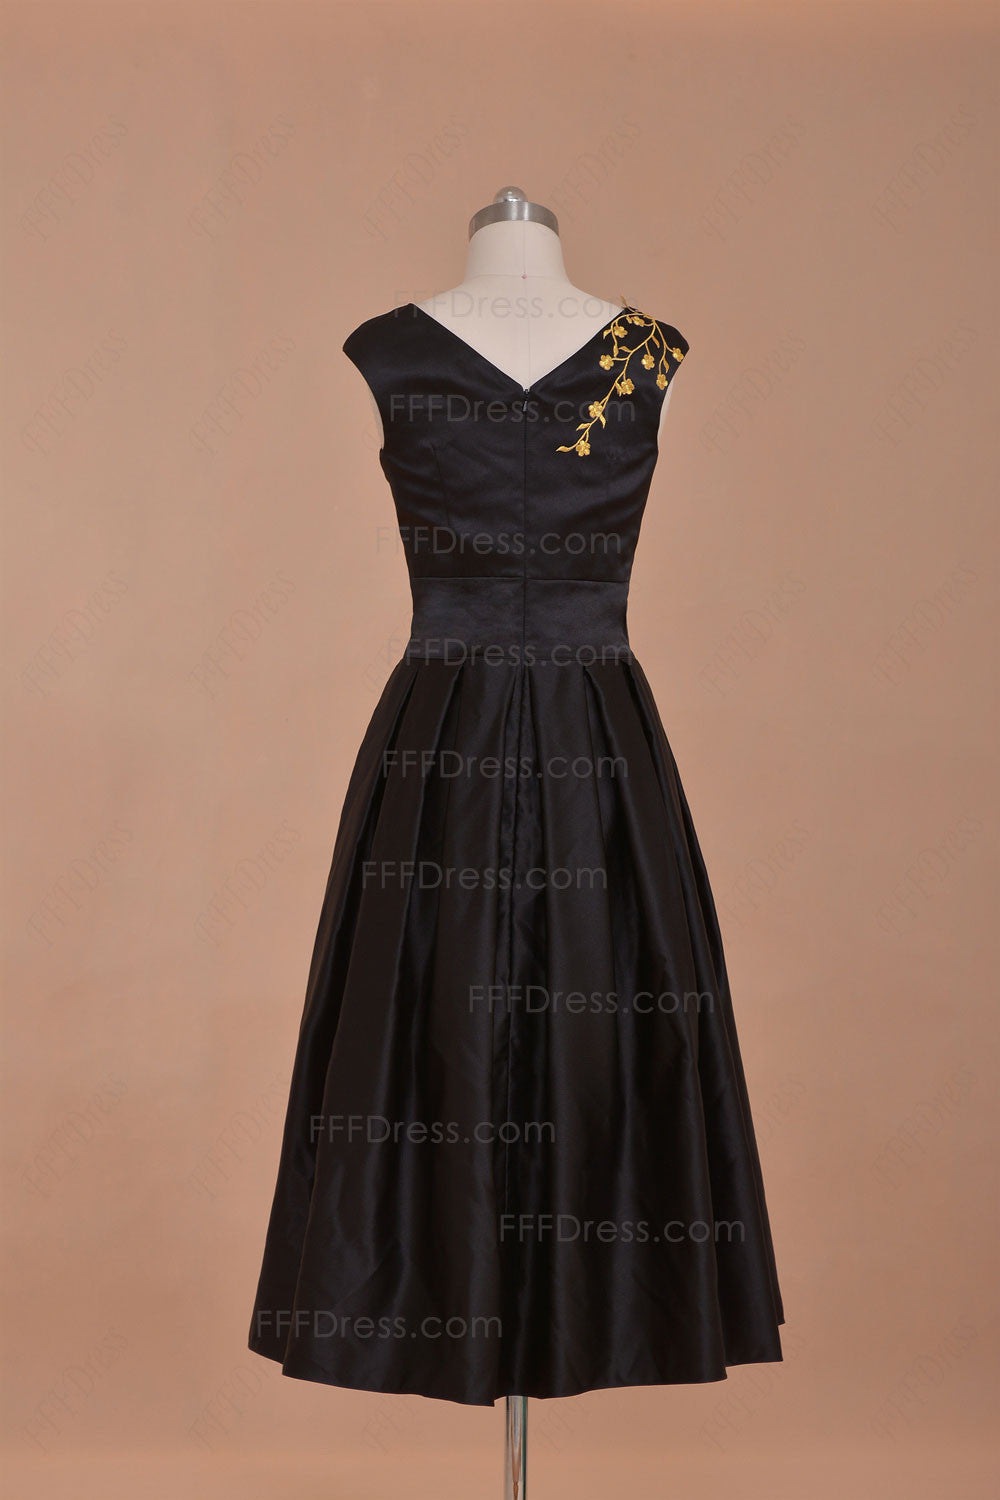 Modest black homecoming dress tea lengthn prom dress